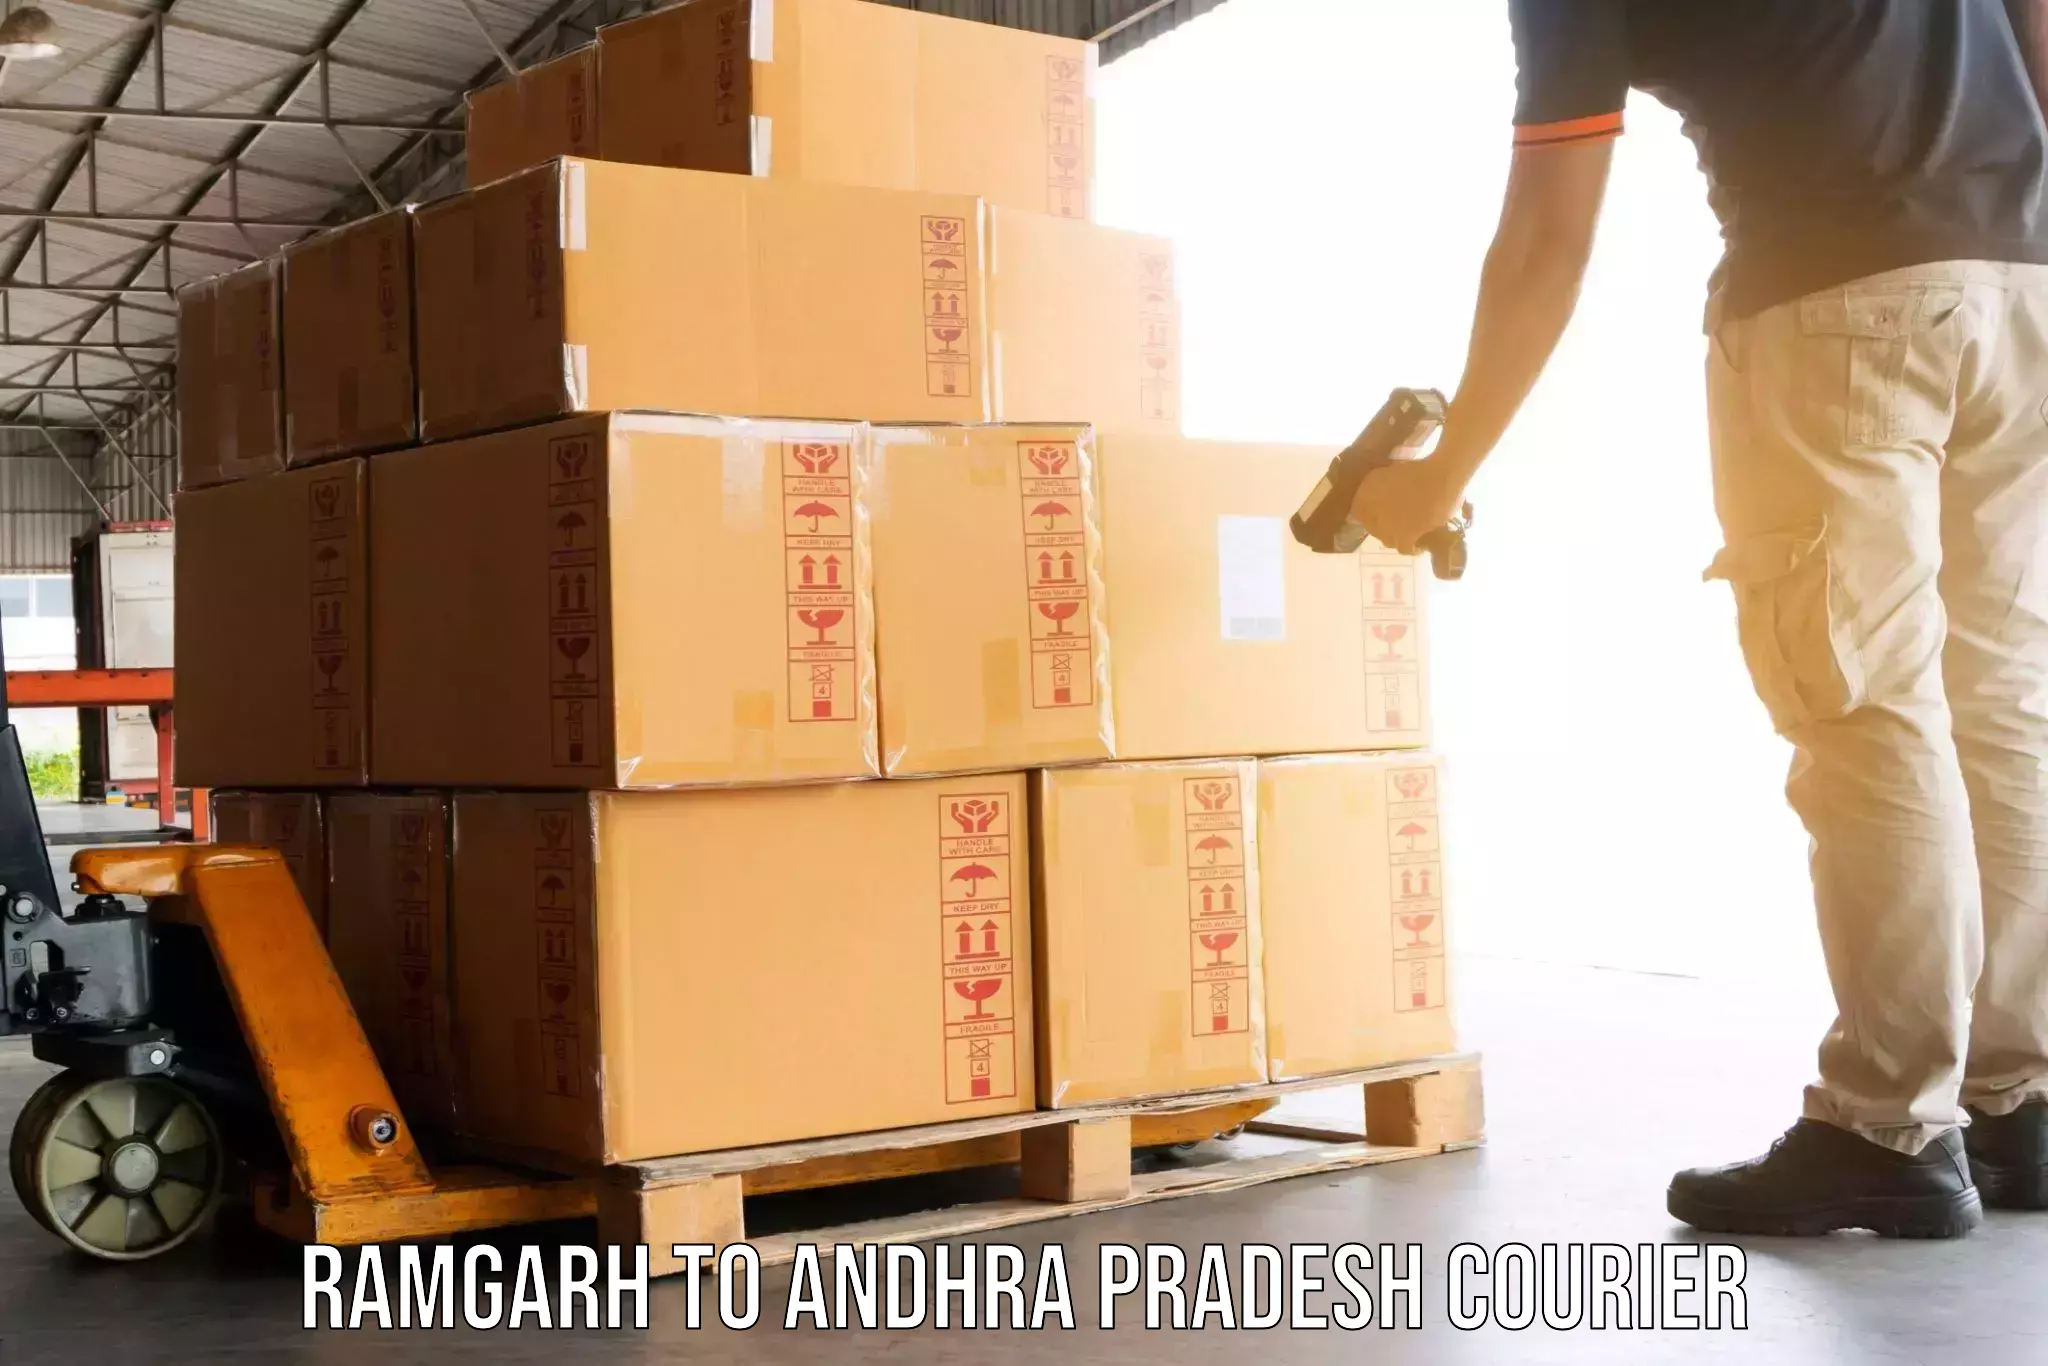 Moving and handling services Ramgarh to Banaganapalli